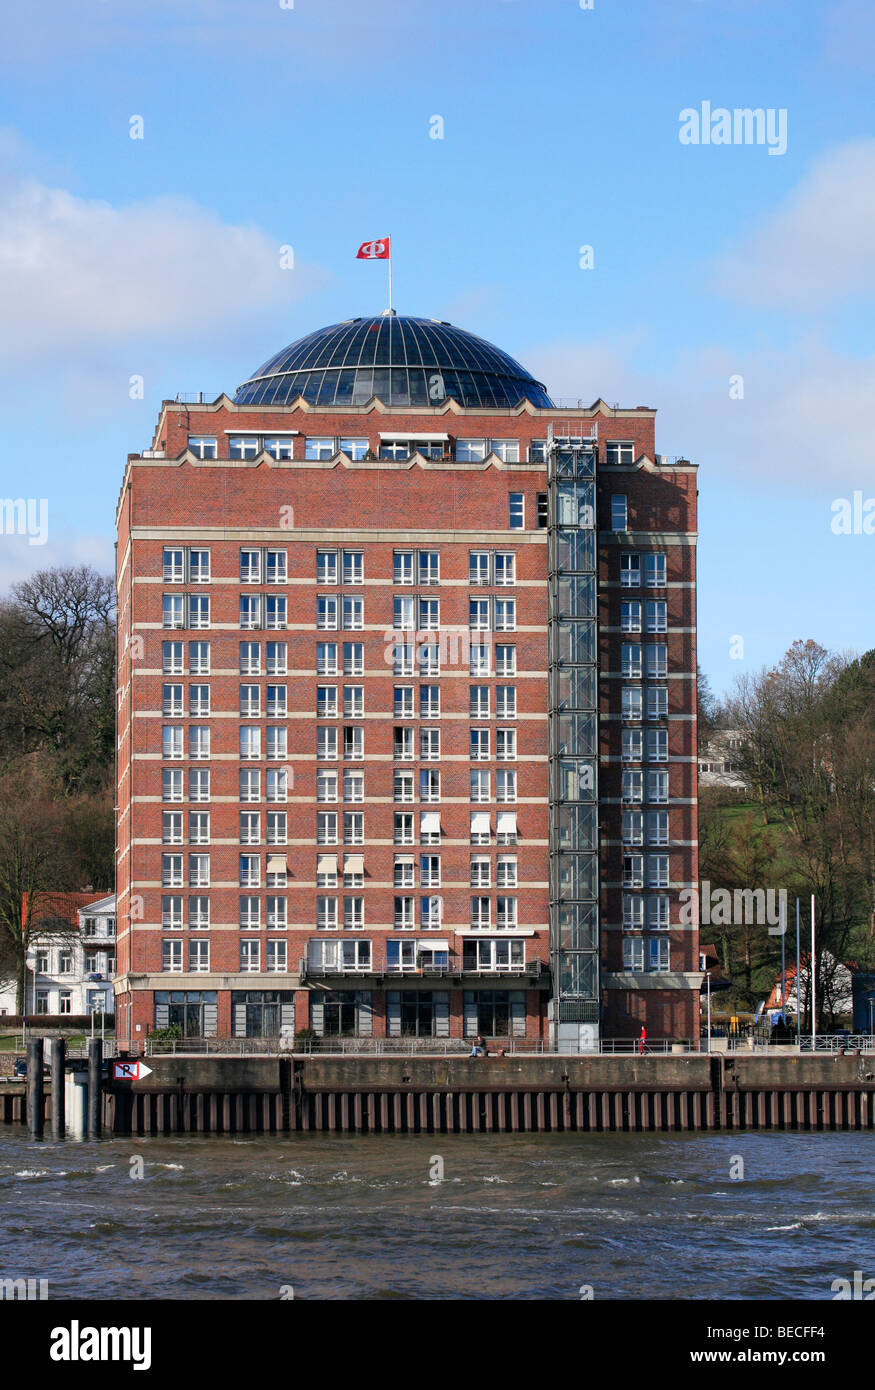 Arquitectura moderna, Augustinum, casa de retiro, una cúpula de cristal, banco del río Elba, el puerto, la Ciudad Hanseática de Hamburgo, Alemania. Foto de stock